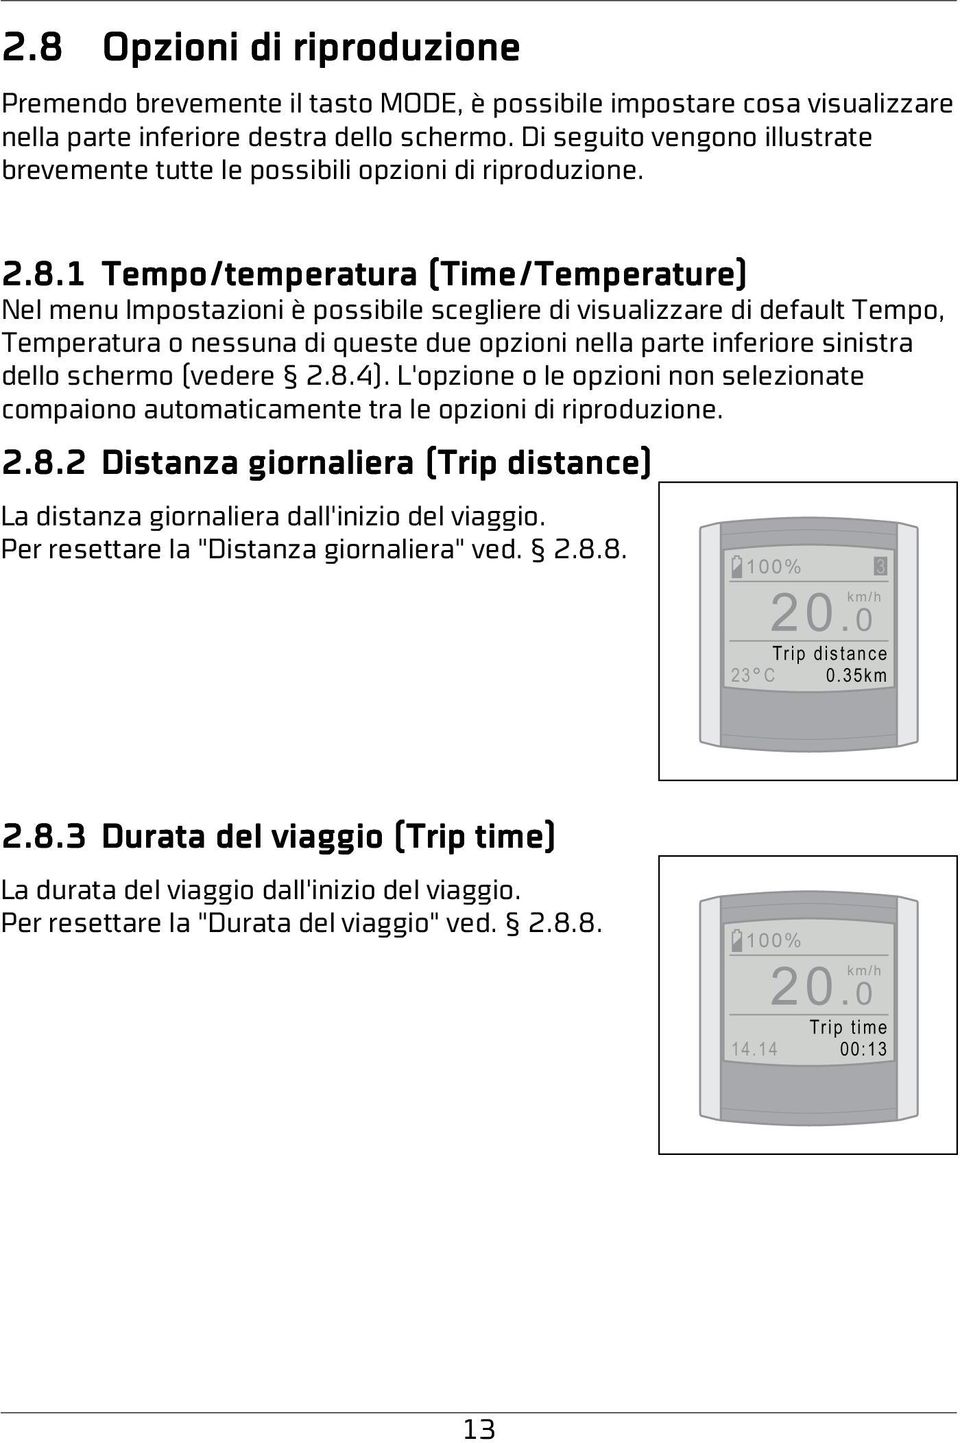 1 Tempo/temperatura (Time/Temperature) Nel menu Impostazioni è possibile scegliere di visualizzare di default Tempo, Temperatura o nessuna di queste due opzioni nella parte inferiore sinistra dello